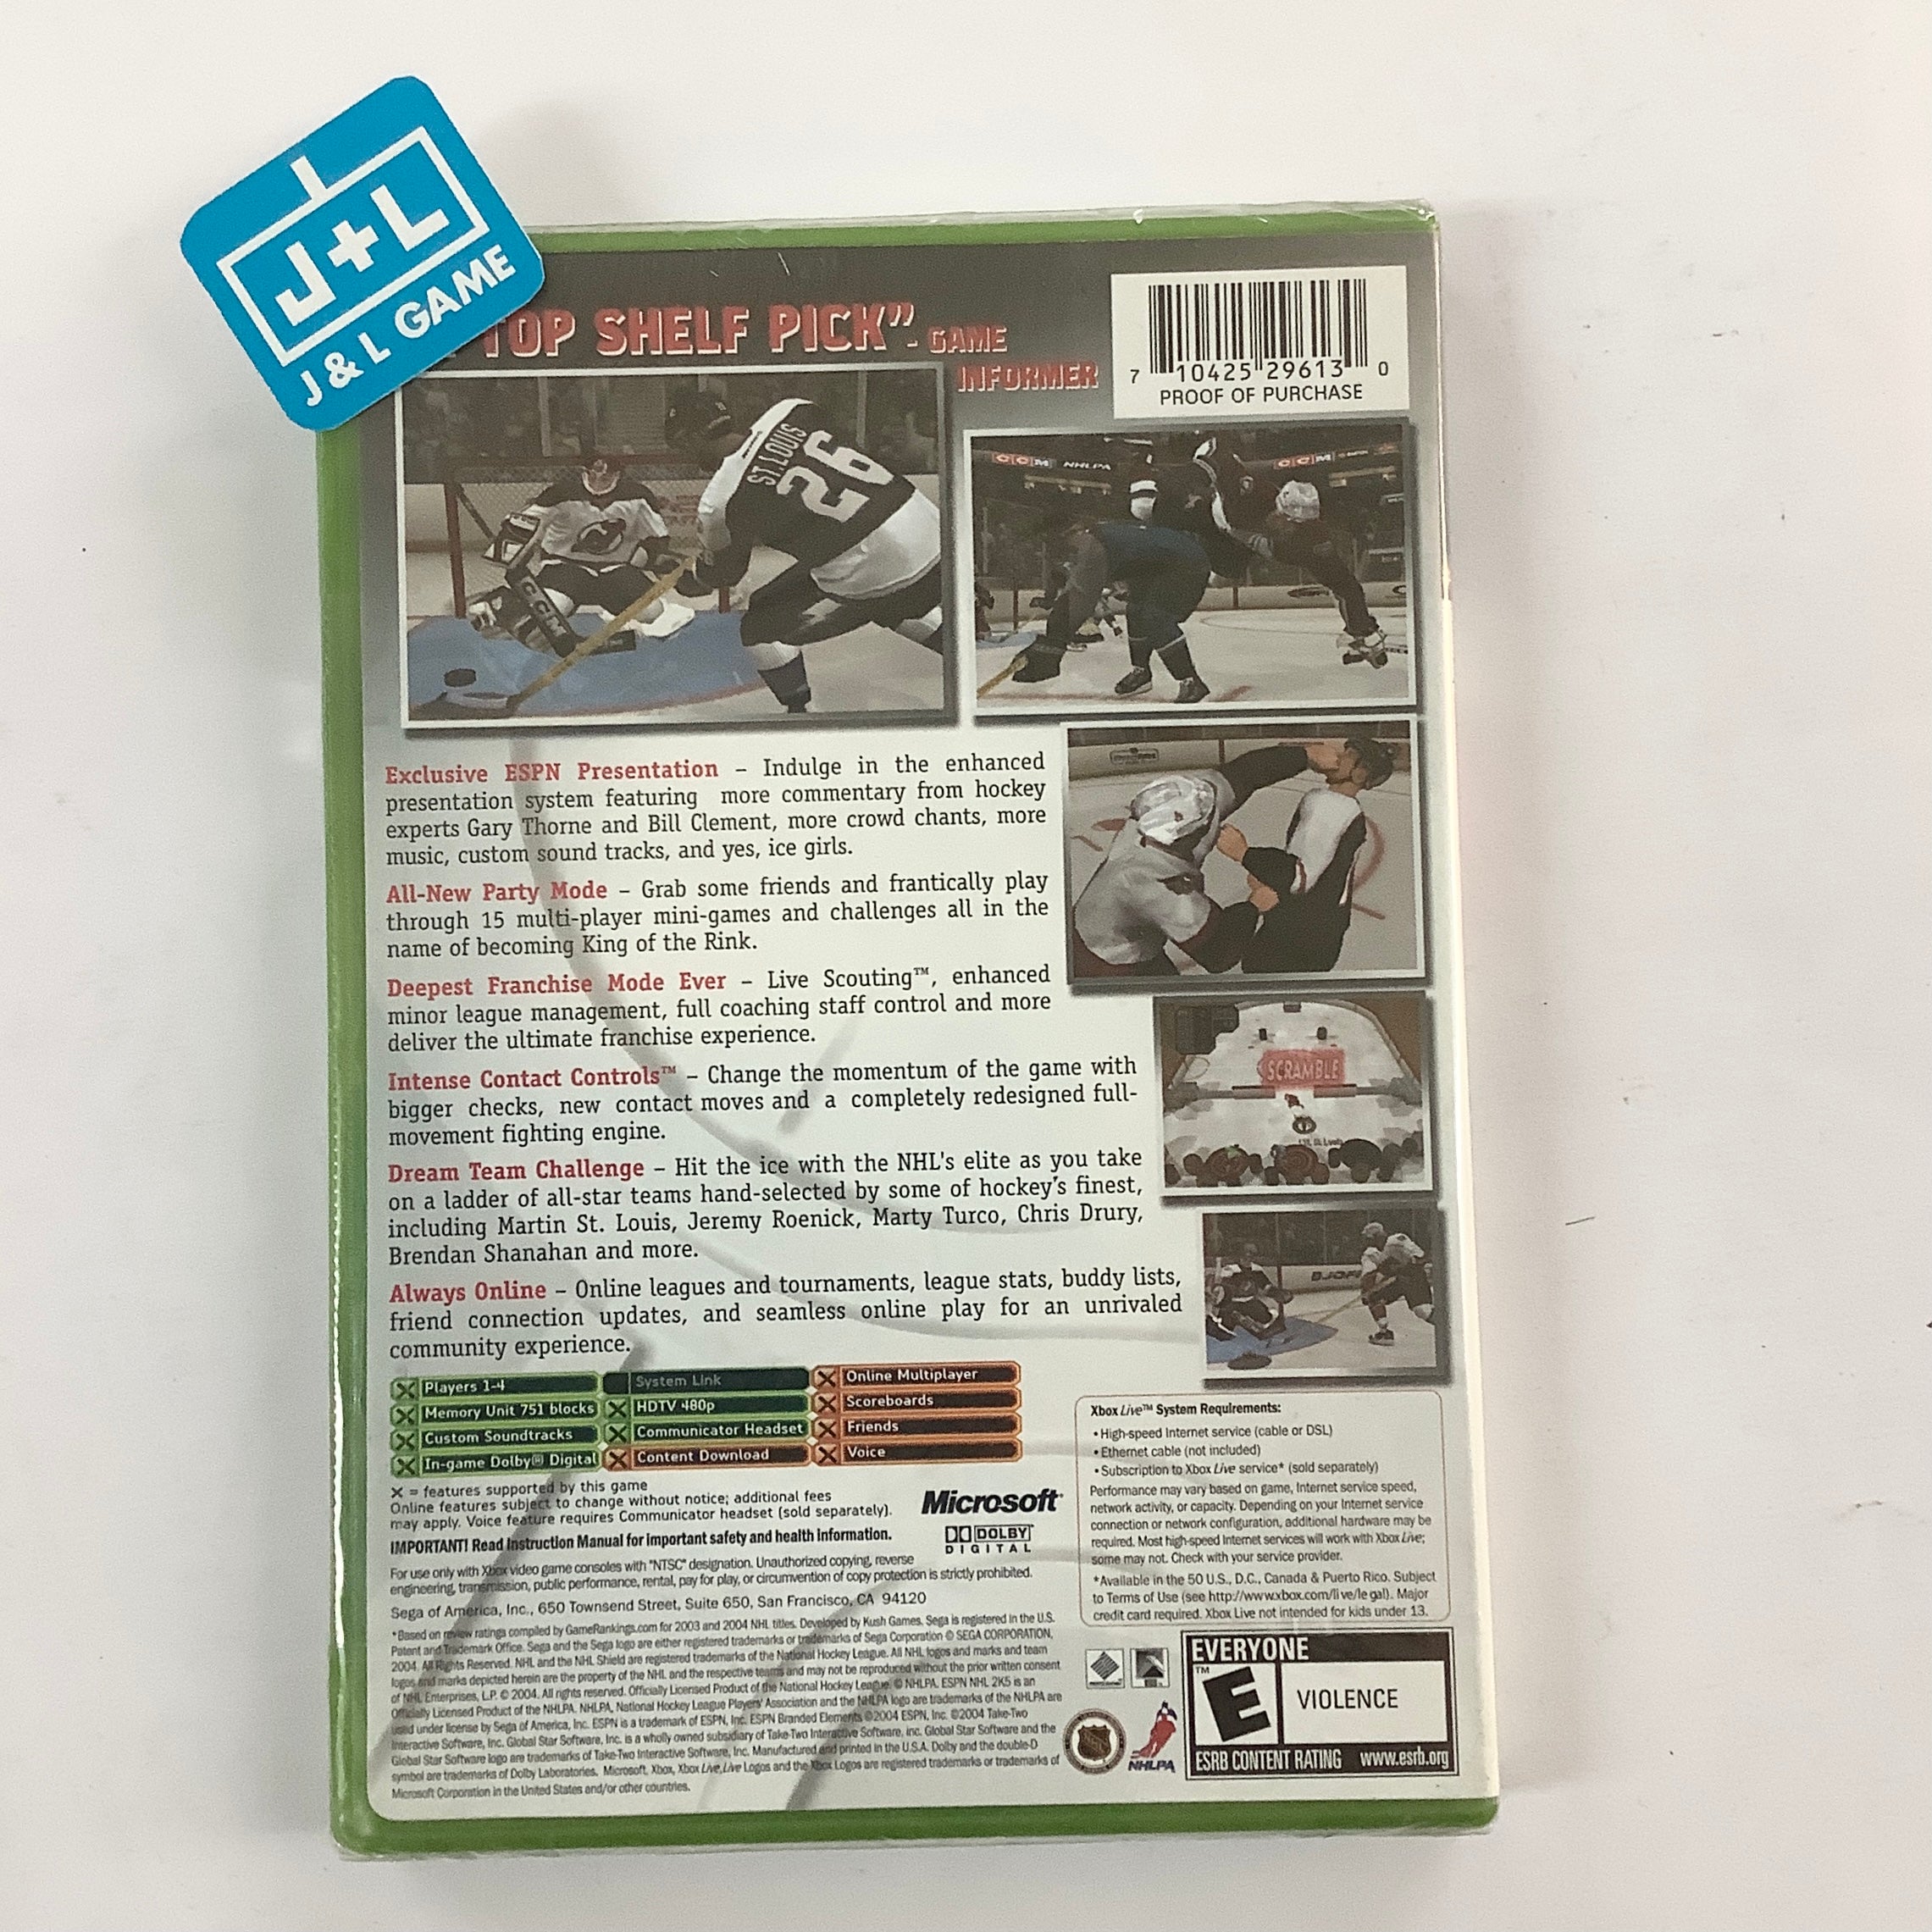 ESPN NHL 2K5 - (XB) Xbox Video Games Sega   